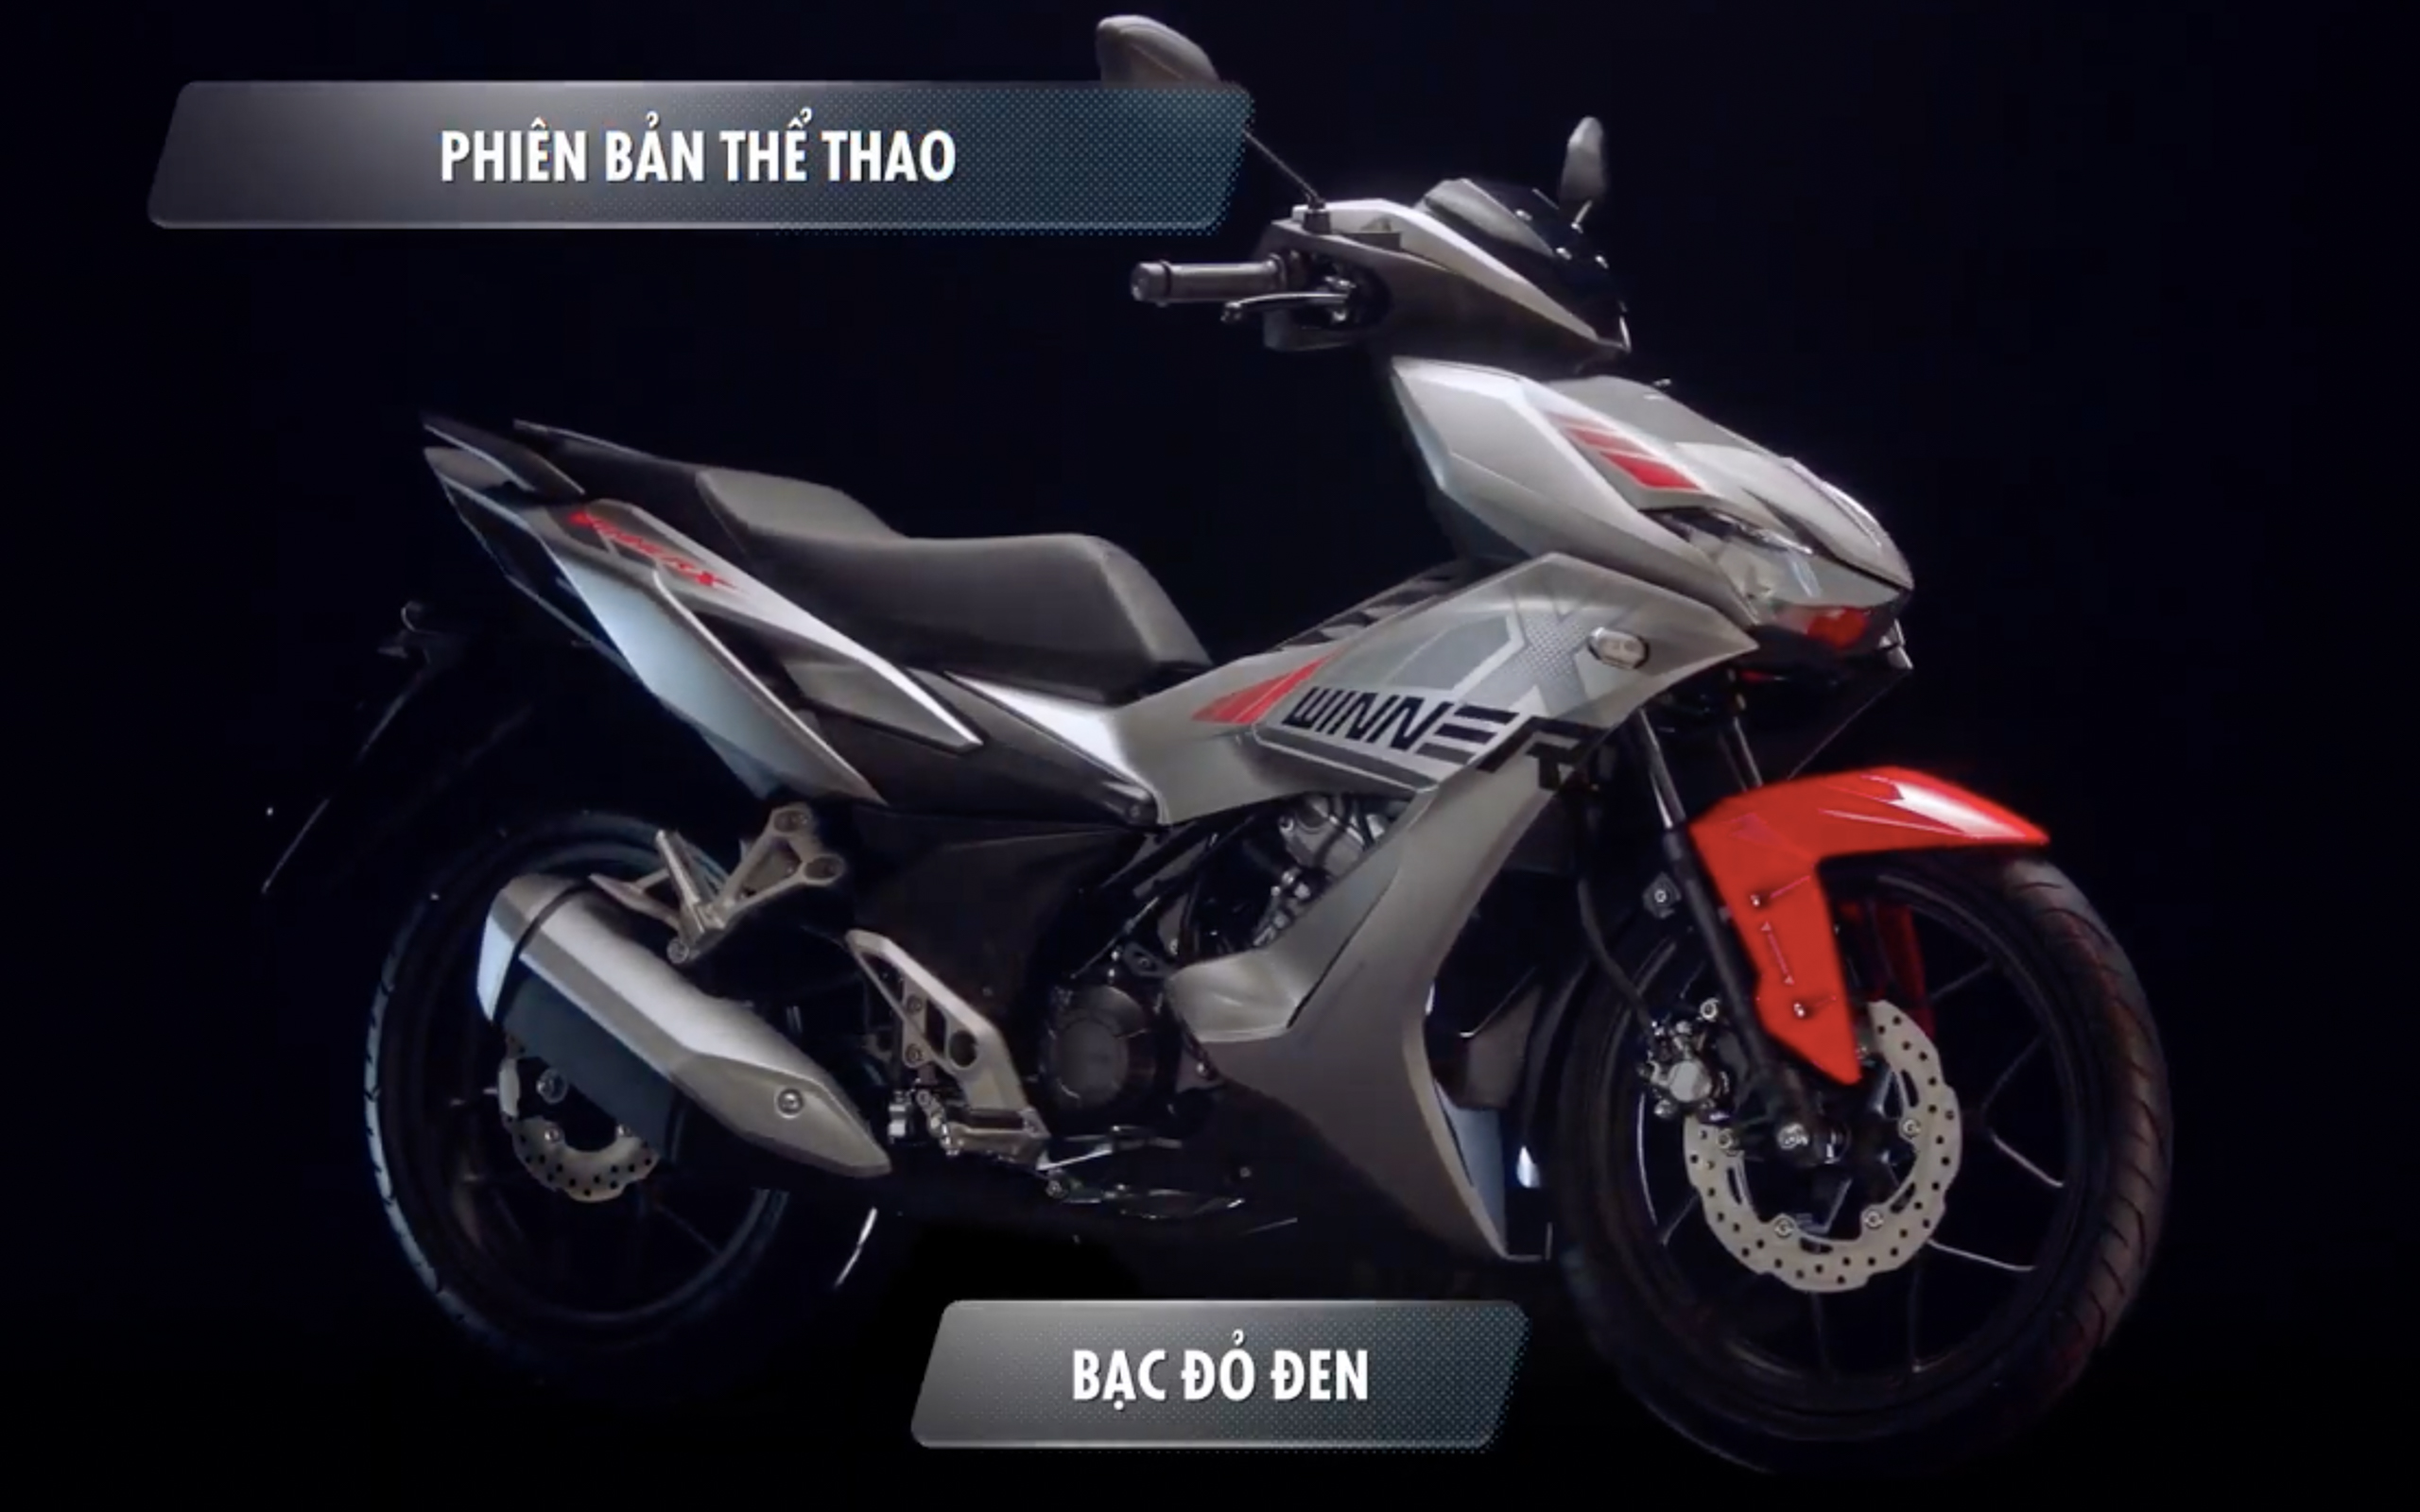 2019 Honda Winner X/RS150R launched in Vietnam Paul Tan - Image 985188